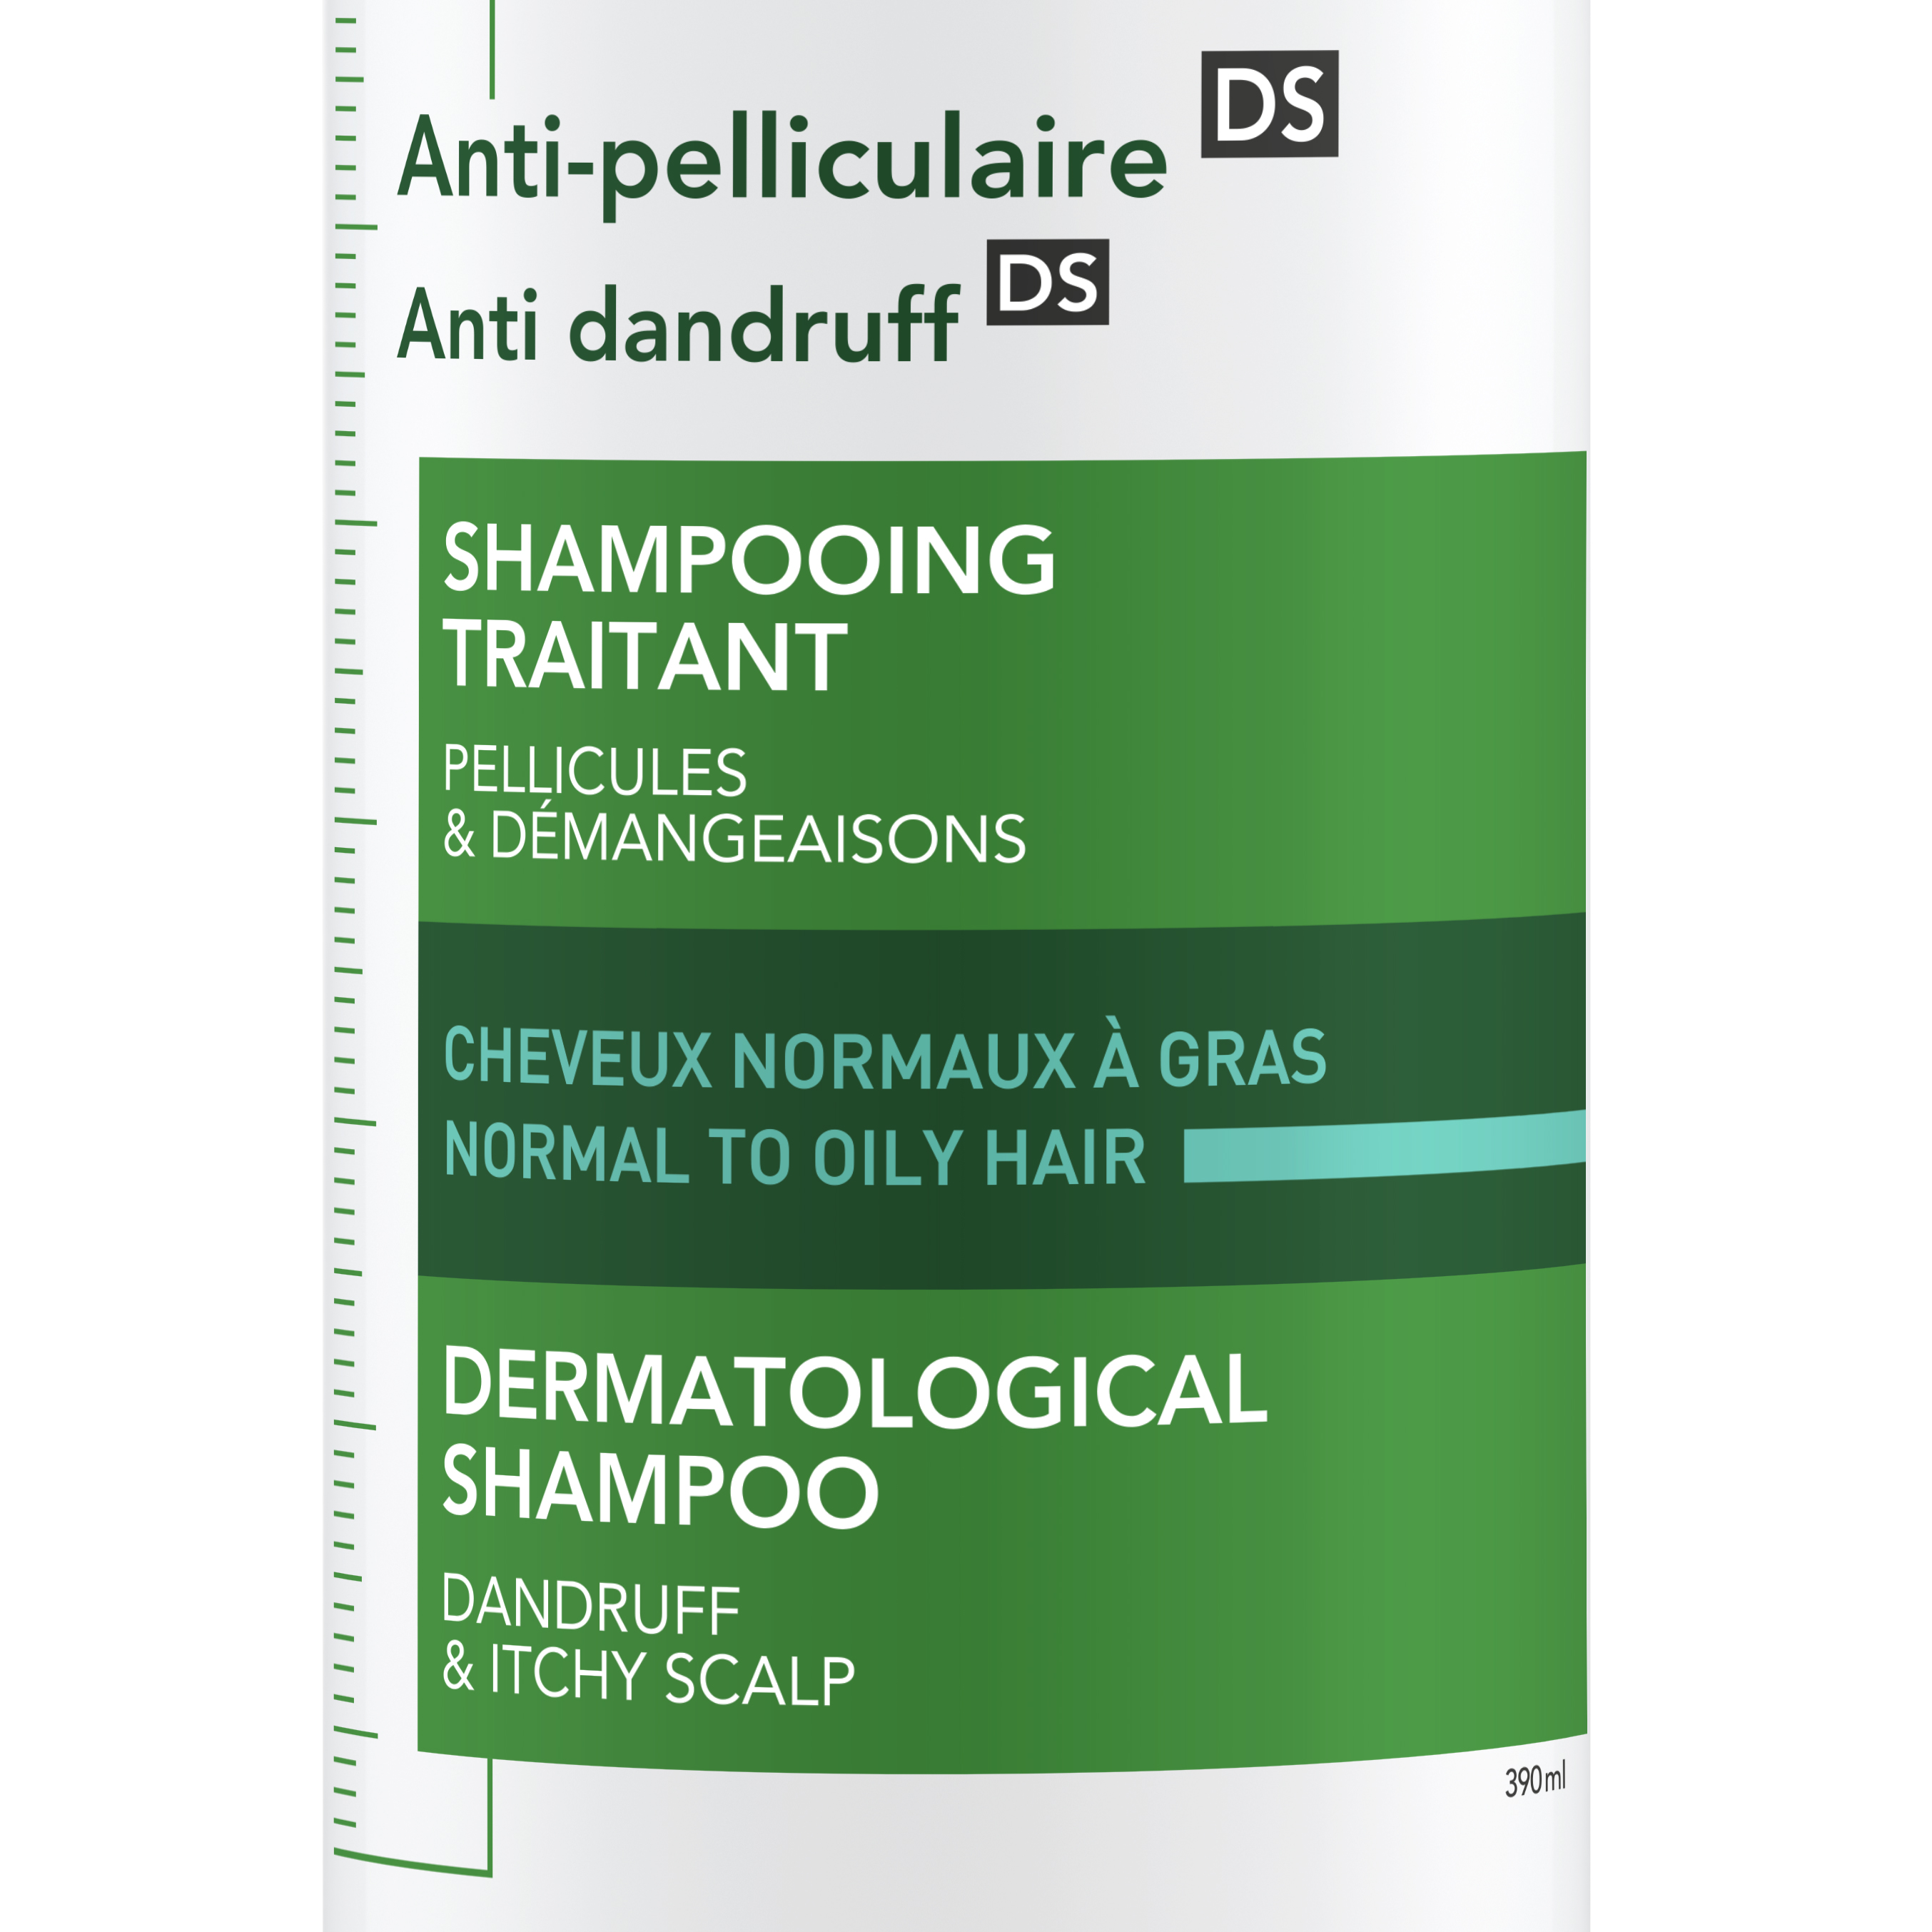 vichy dercos szampon przeciwłupieżowy włosy tłuste 390 ml